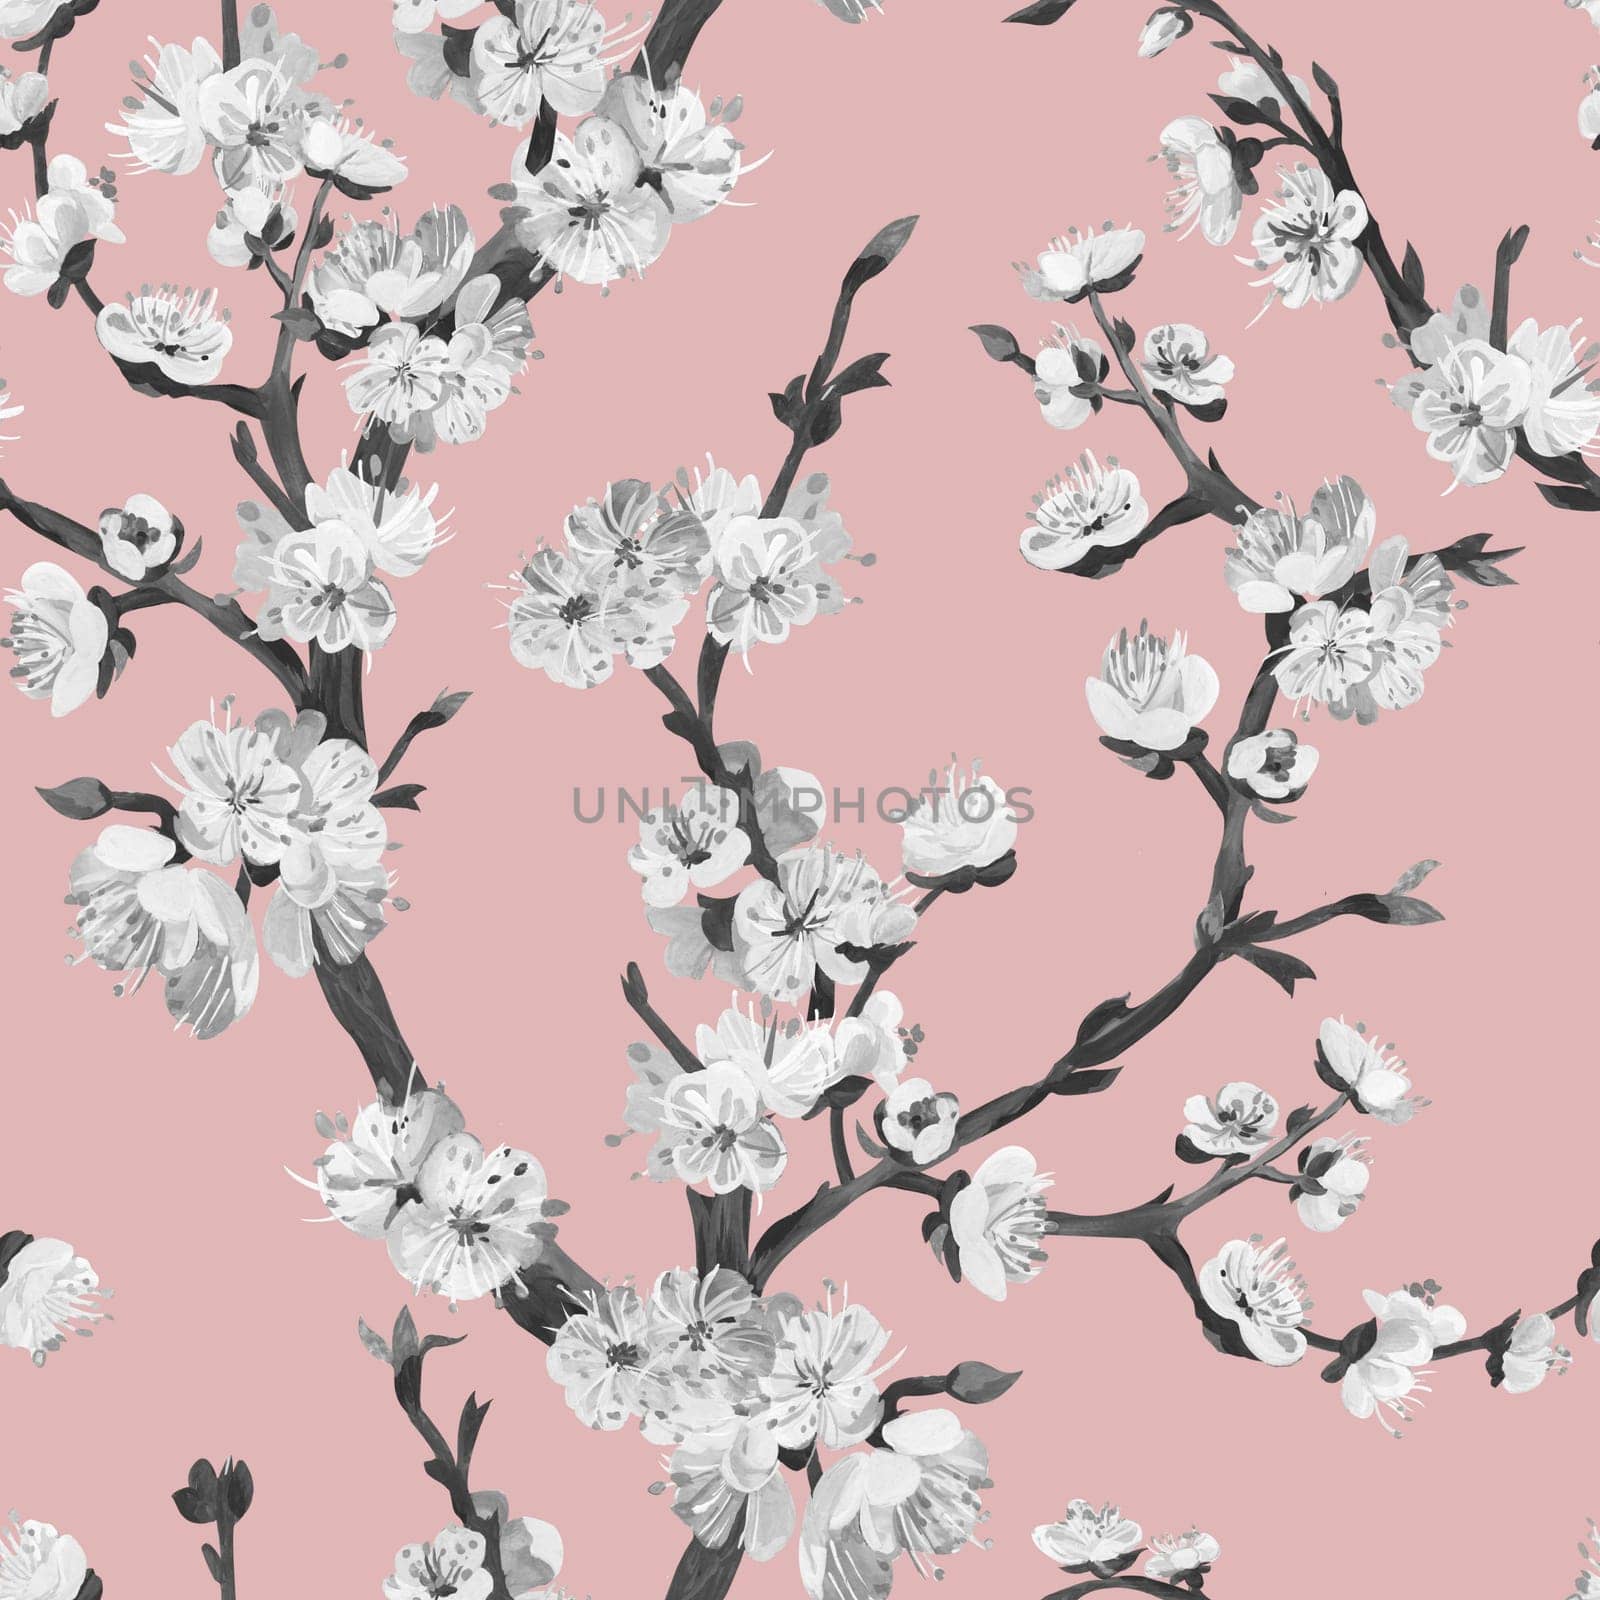 Botanical black and white seamless pattern with sakura cherry branch by MarinaVoyush